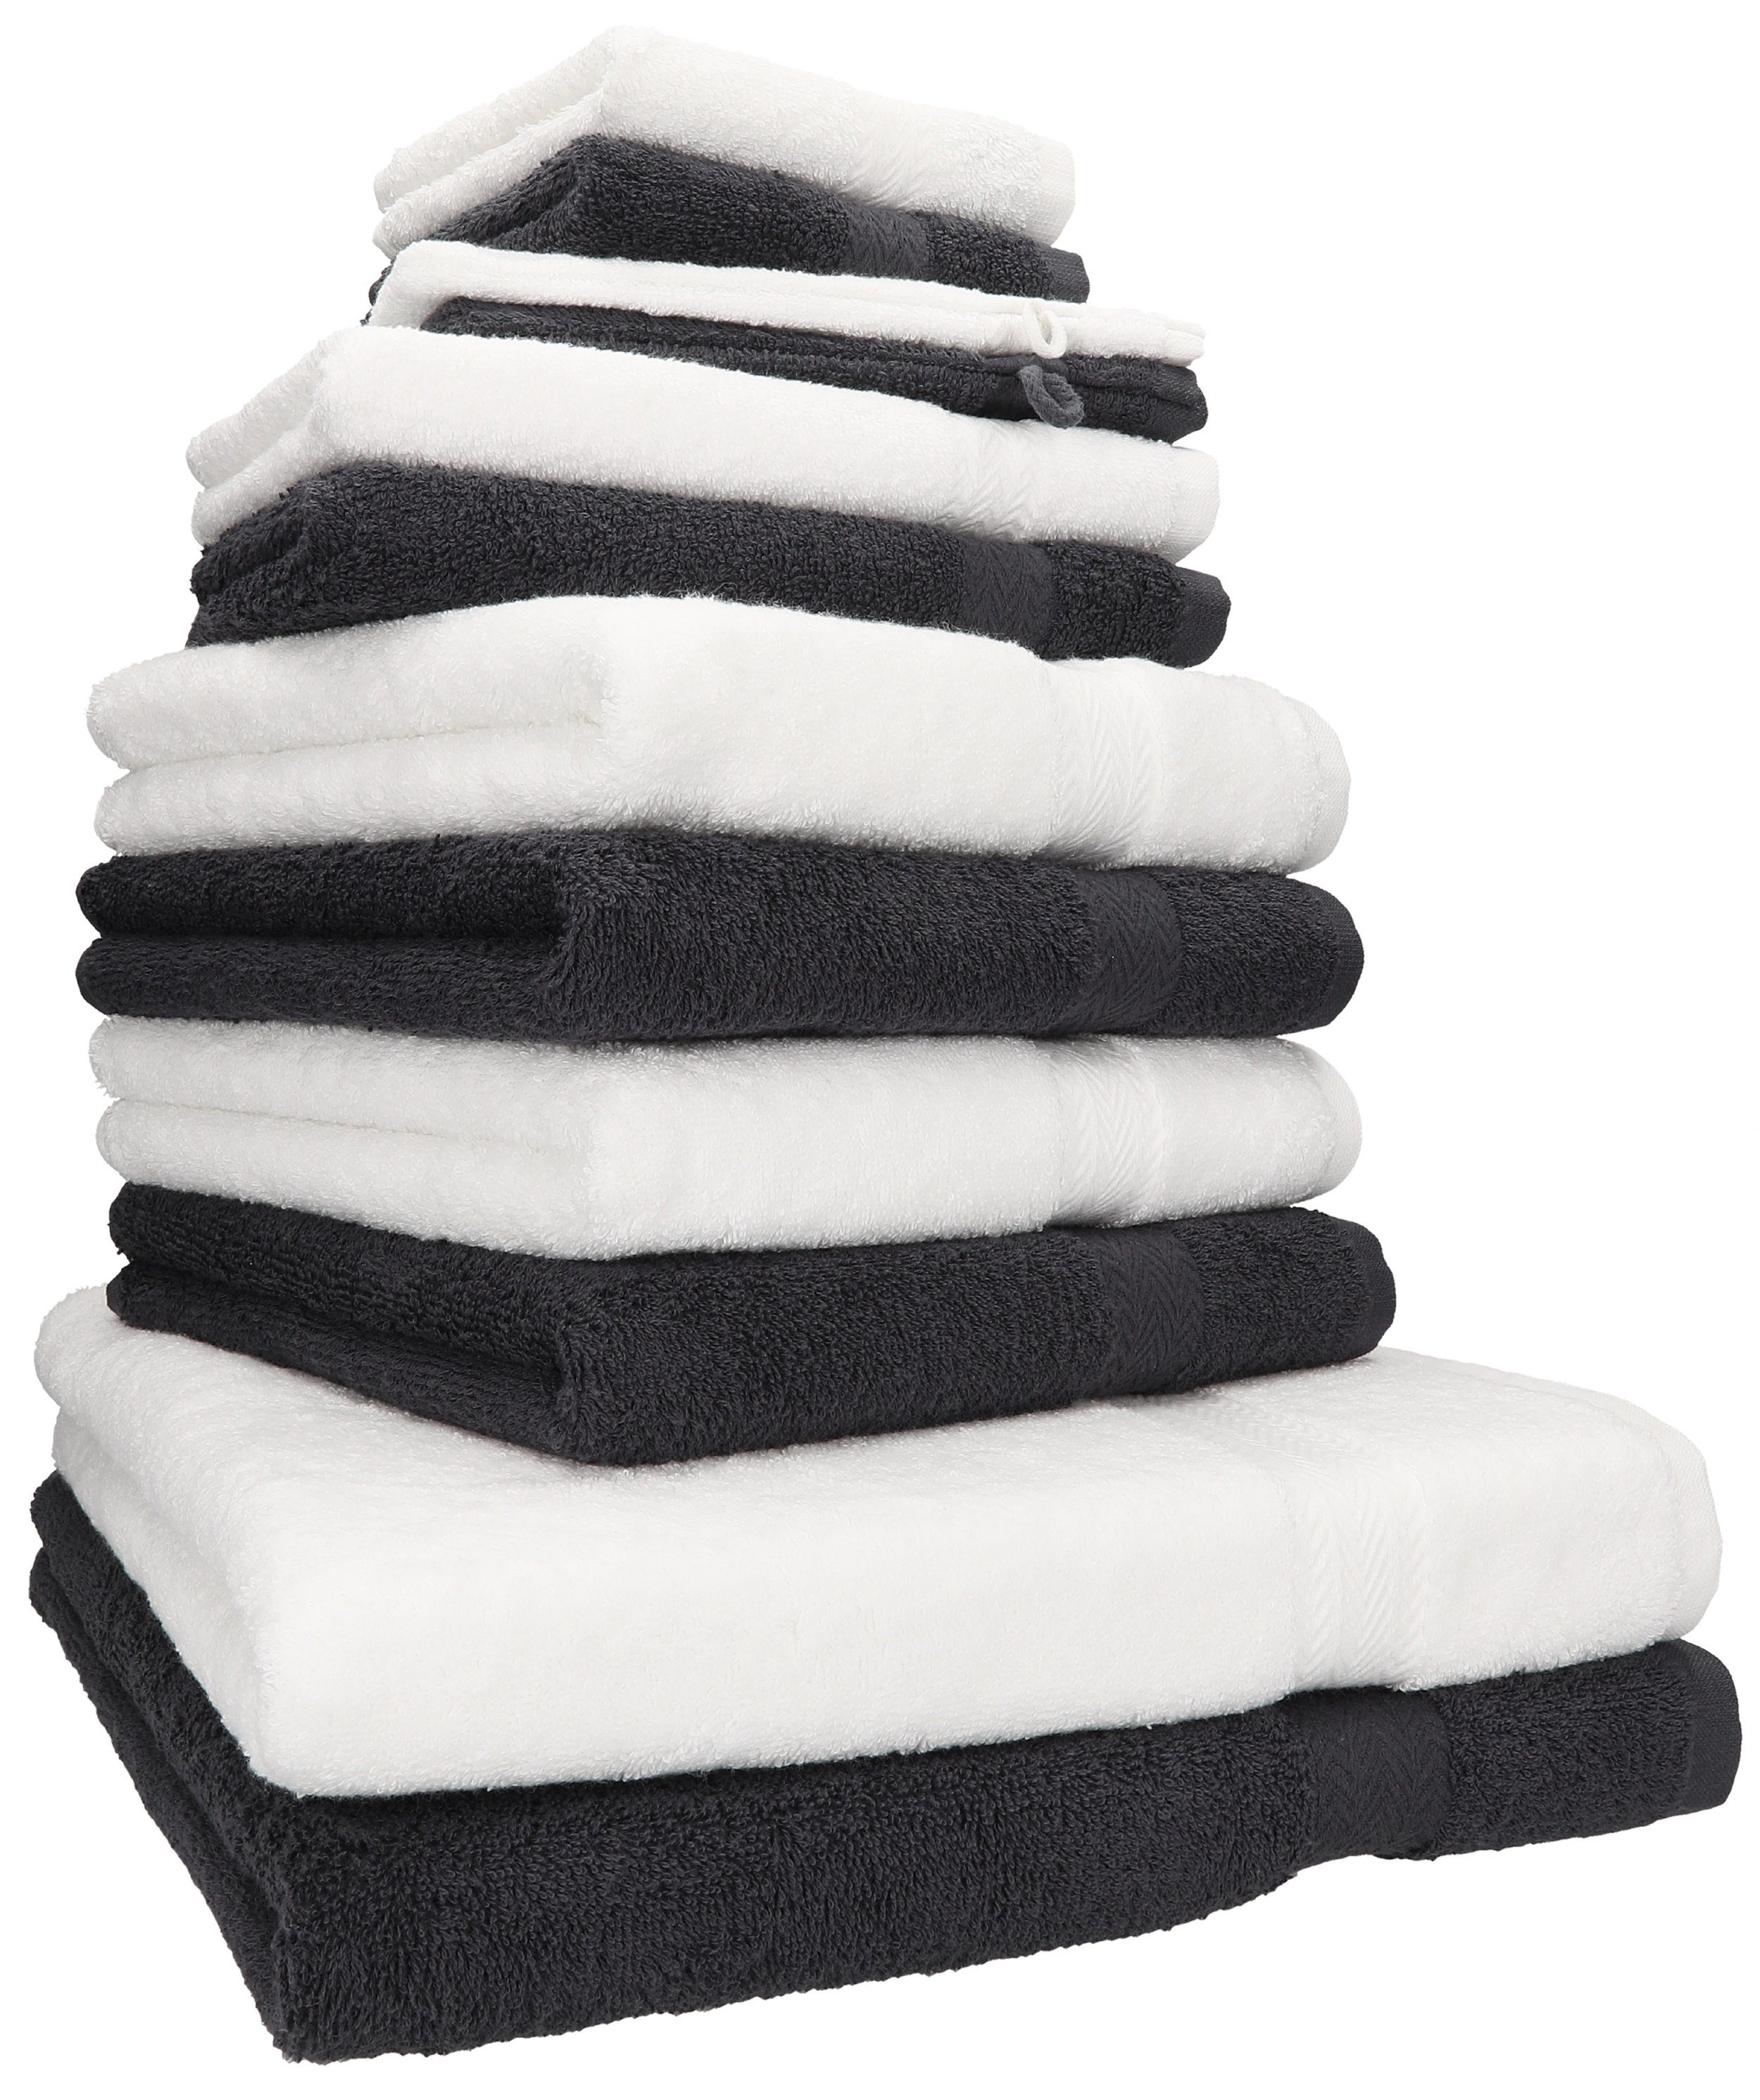 Betz Handtuch Handtuch 12-TLG. 100% weiß/Graphit Farbe Set Premium grau, (12-tlg) Set Baumwolle